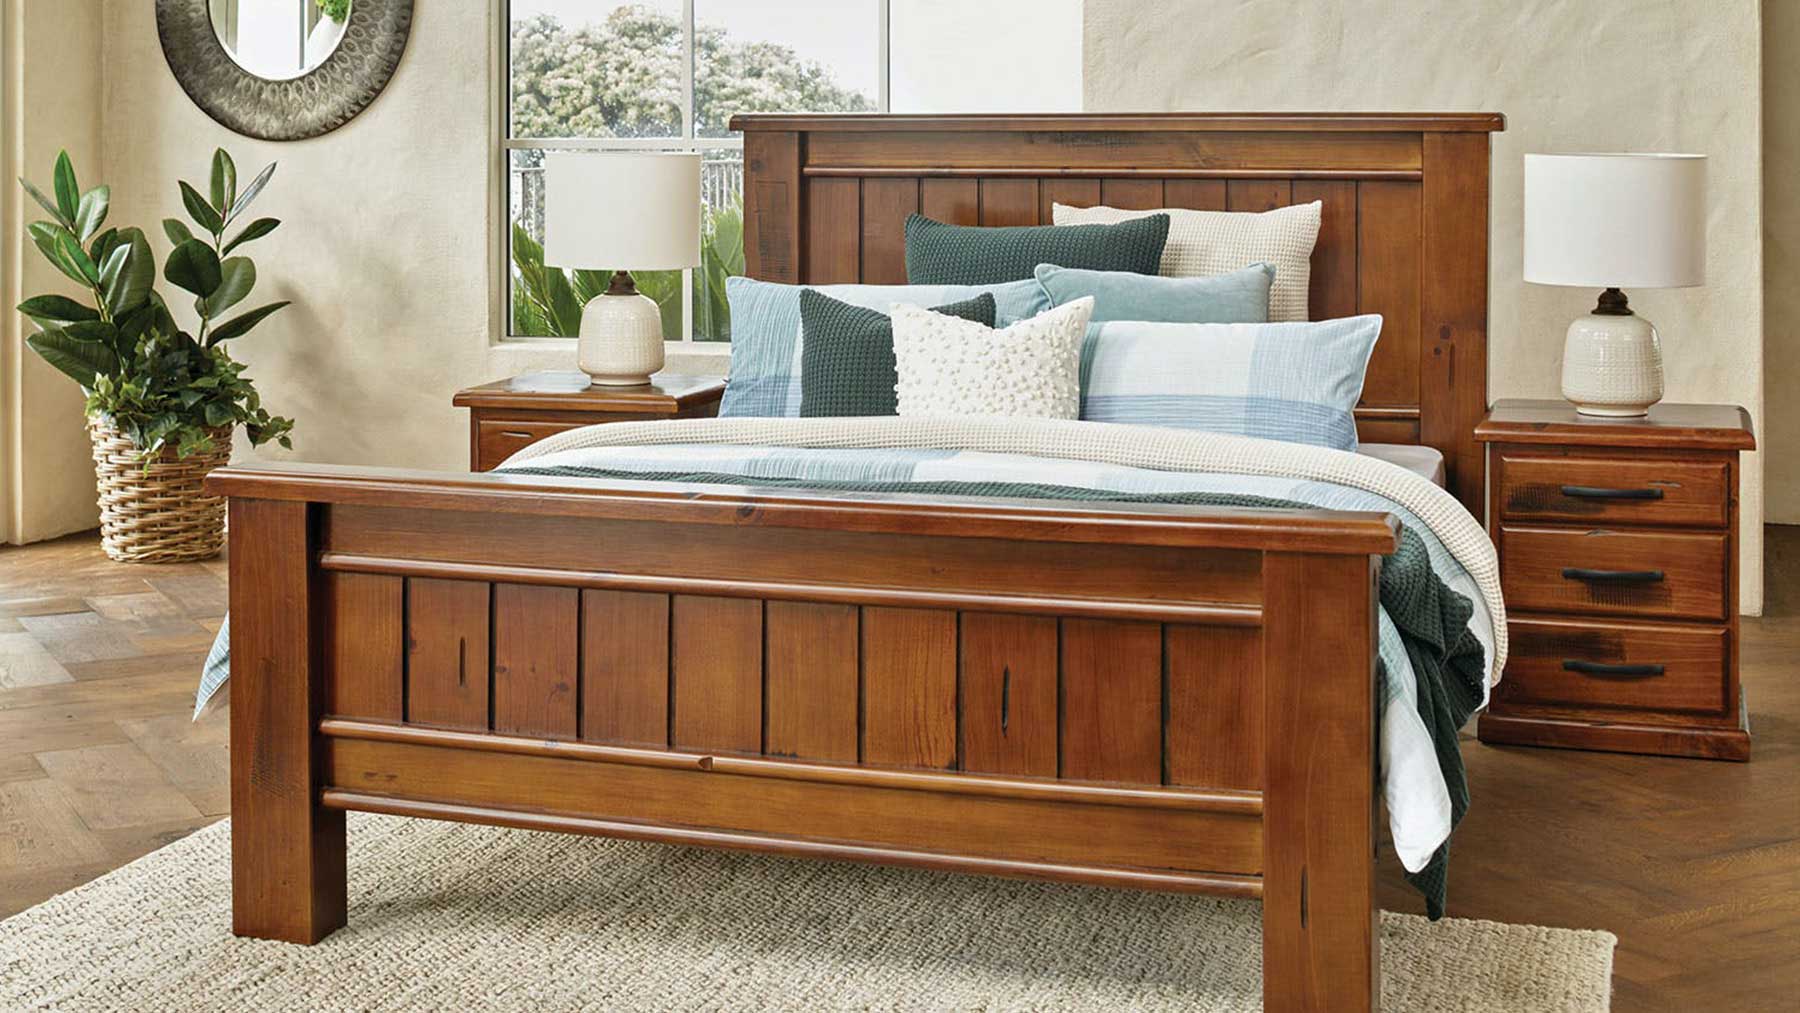 Giường ngủ gỗ sồi kiểu dáng thanh lịch GHC-932